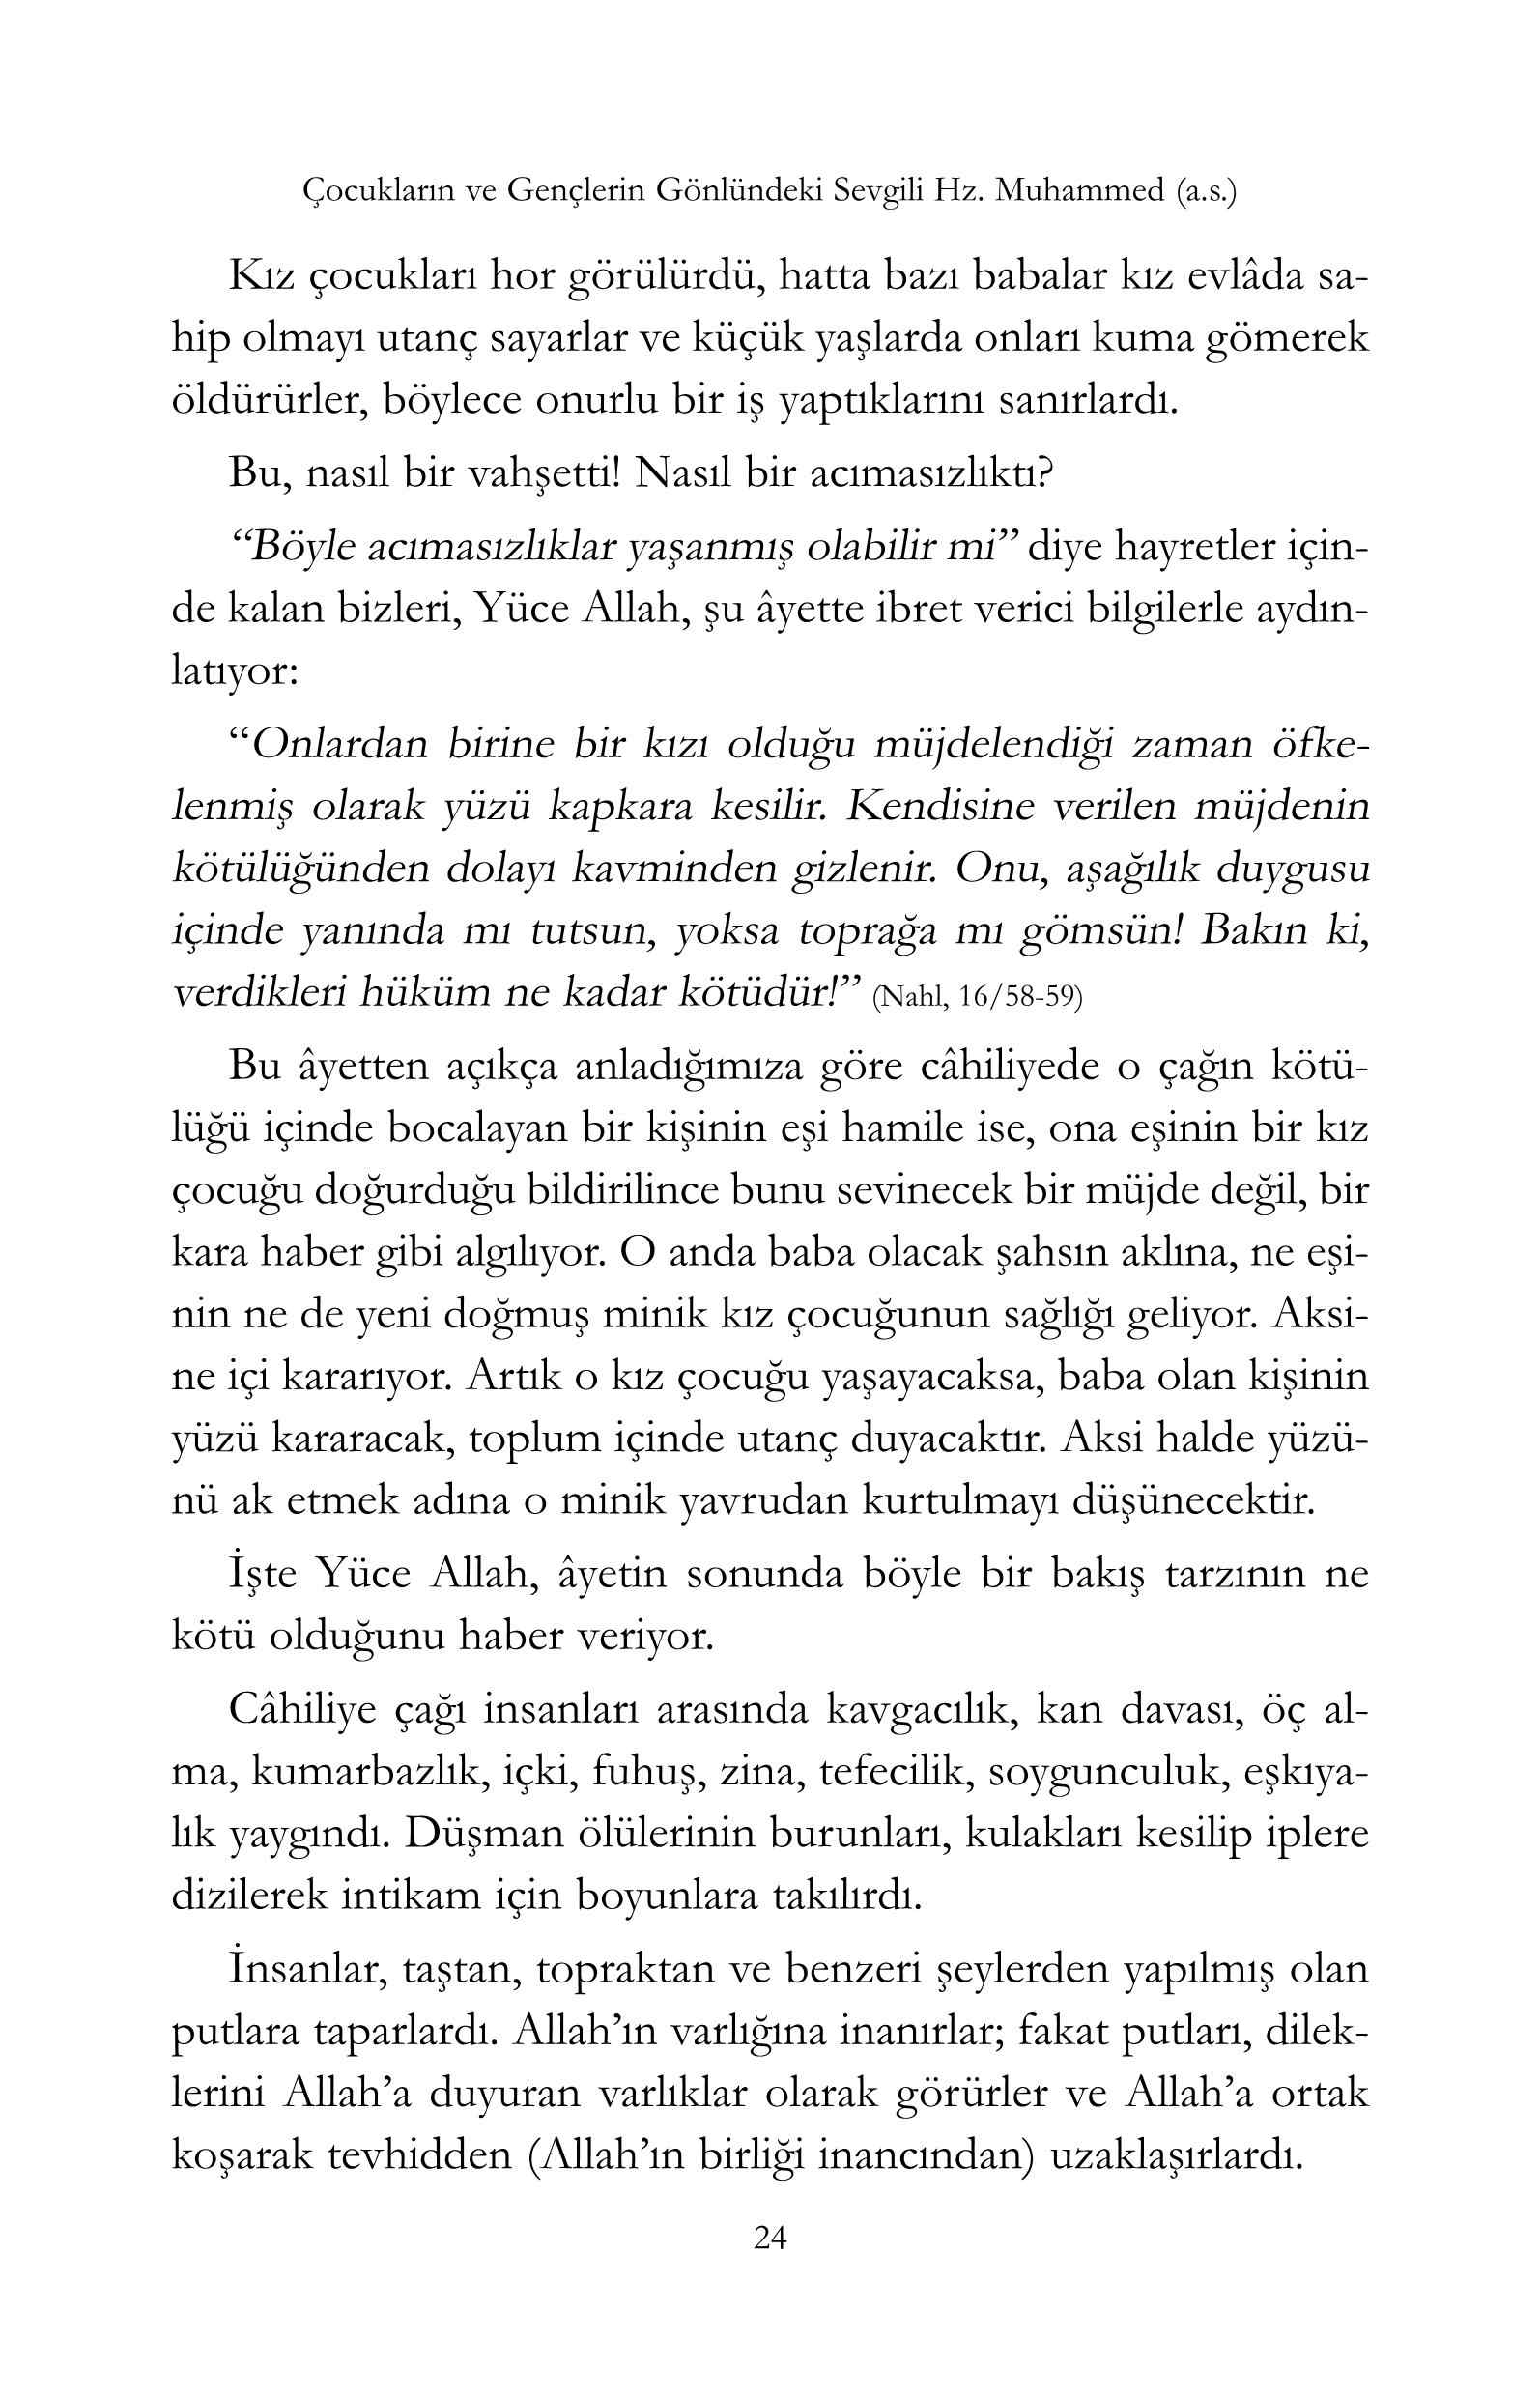 Huseyin Algul - Genclerin ve Cocuklarin Gonlundeki Sevgili Hz Muhammed Aleyhisselam - IsikYayinlari.pdf, 167-Sayfa 